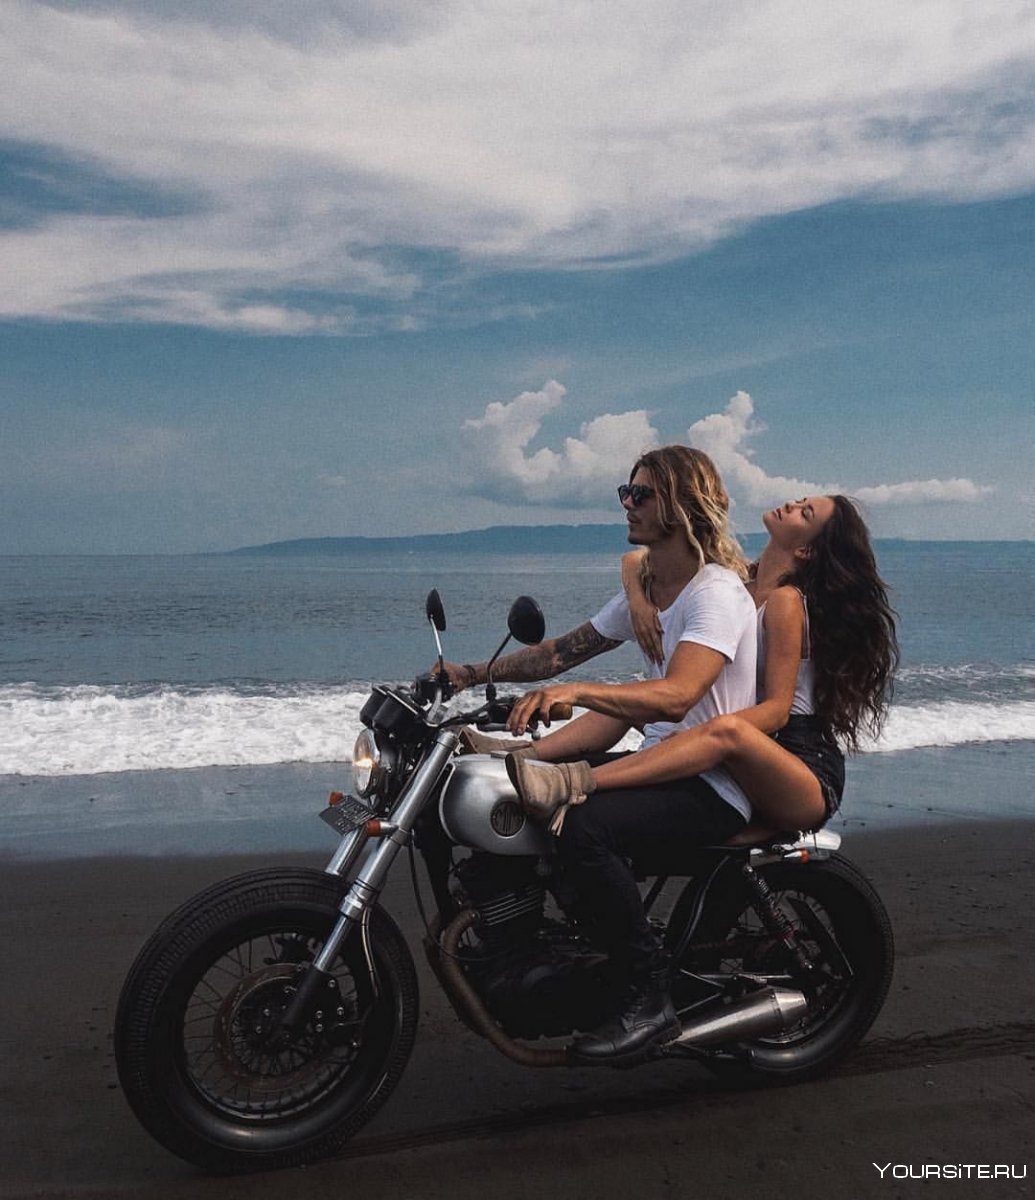 Парень и девушка на мотоцикле едут